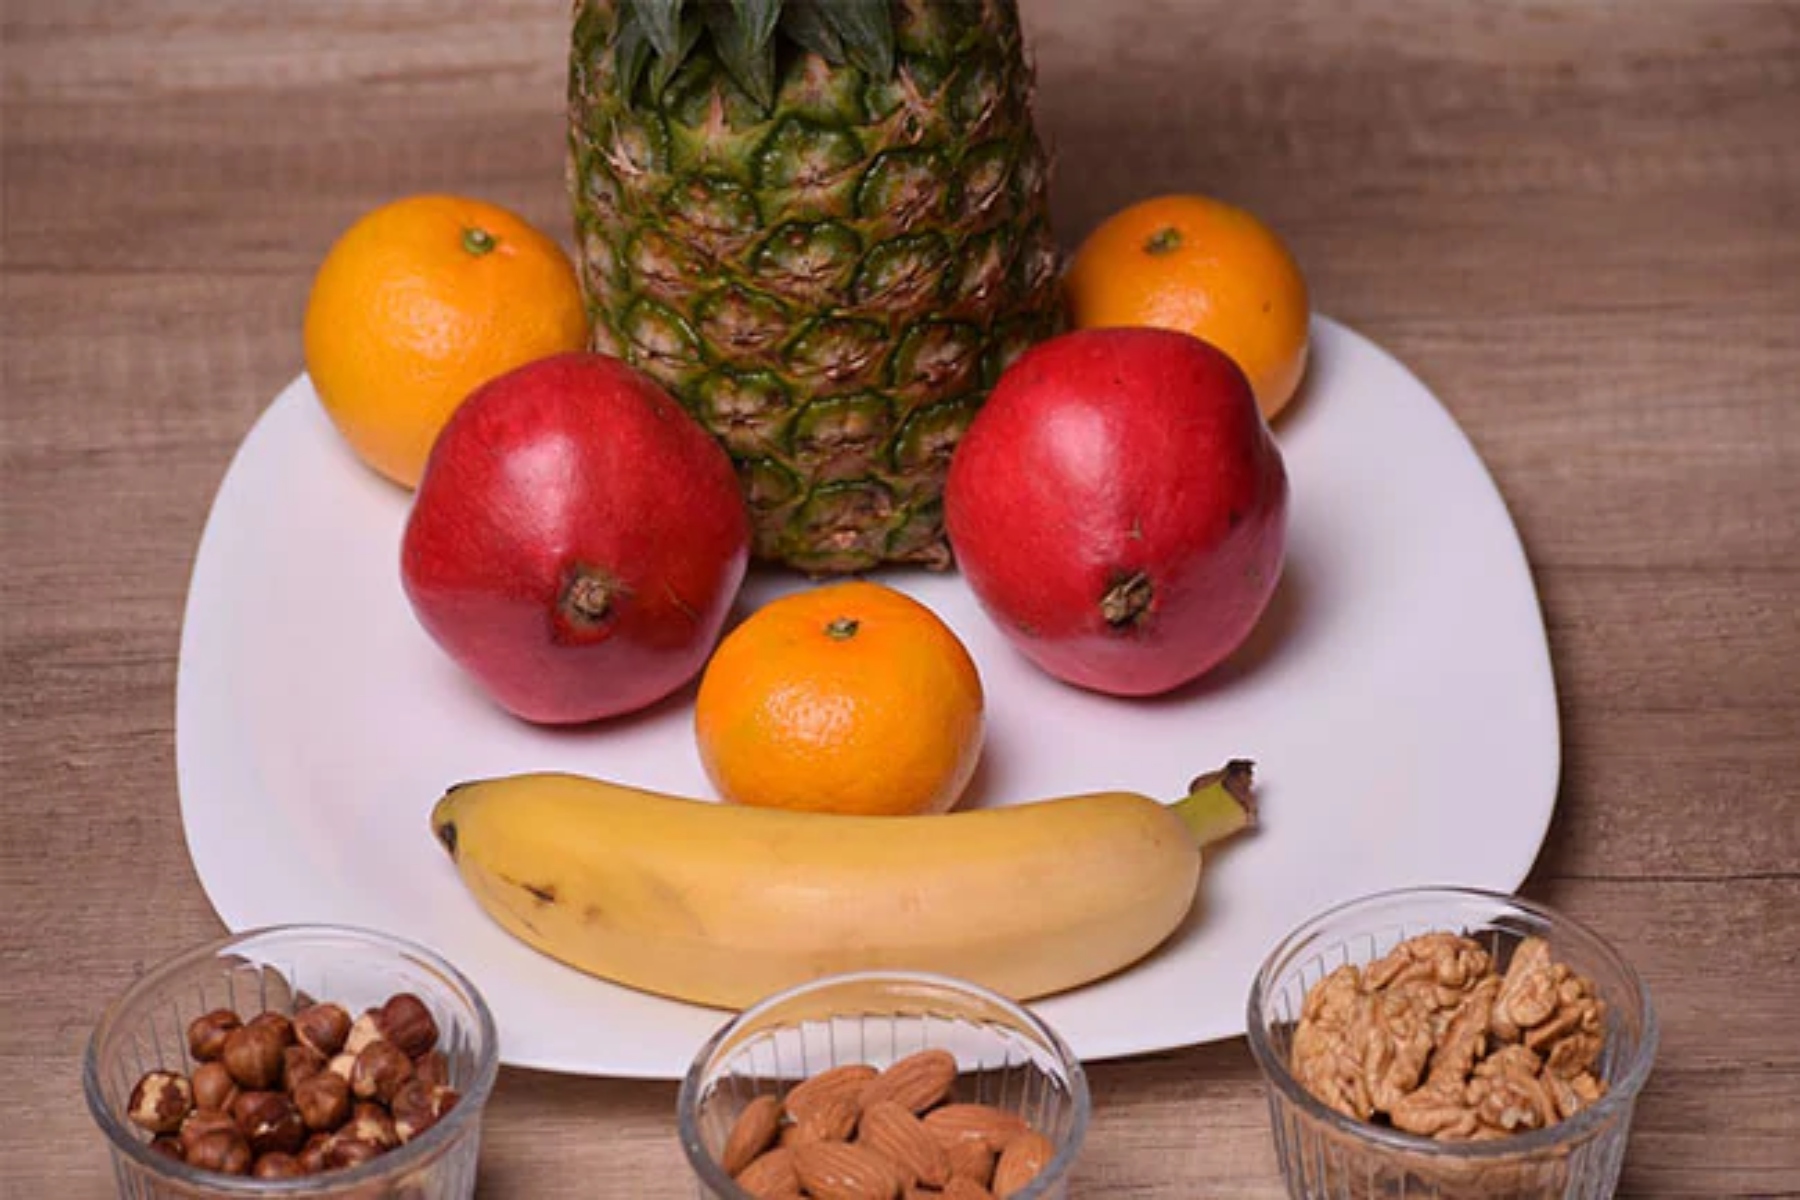 Φρούτα θυρεοειδής: Δώστε προτεραιότητα στην ευεξία του θυρεοειδούς με την ενσωμάτωση φρούτων